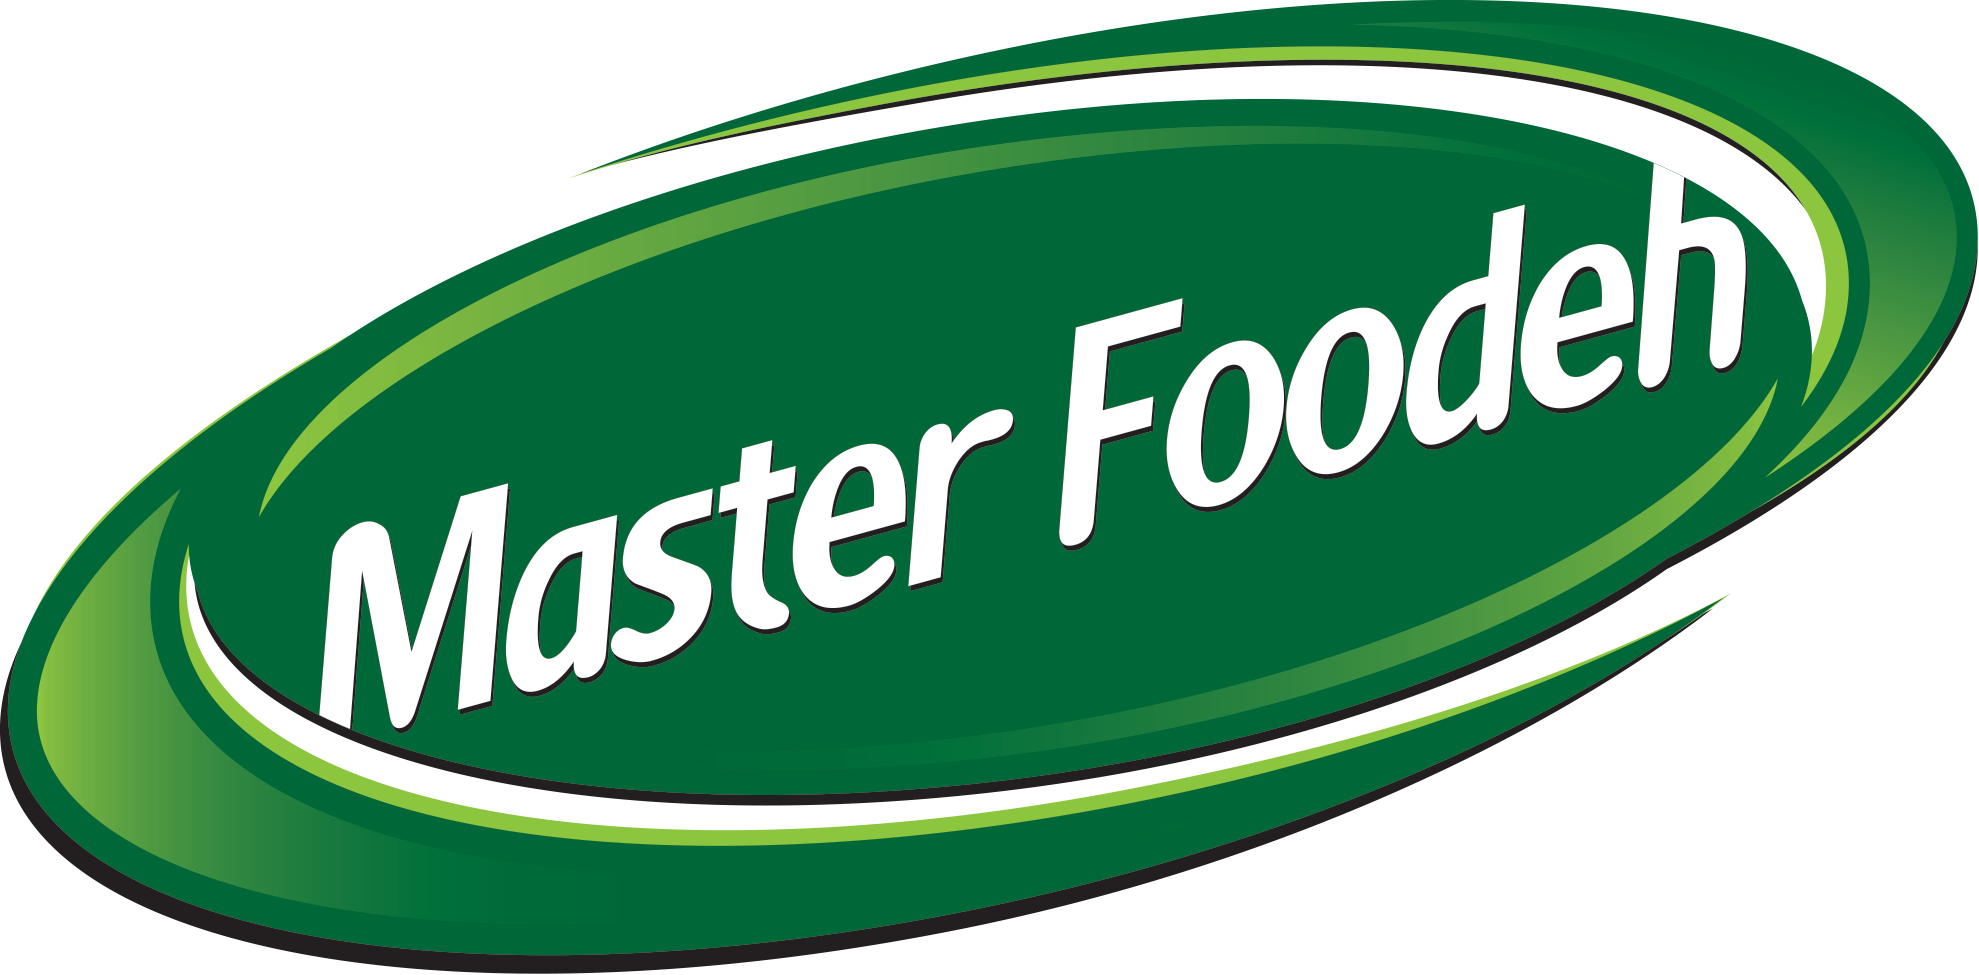 مدیر ارشد مارکتینگ | Chief Marketing Officer (CMO) - شرکت صنایع غذایی ماسترفوده | Master Foodeh